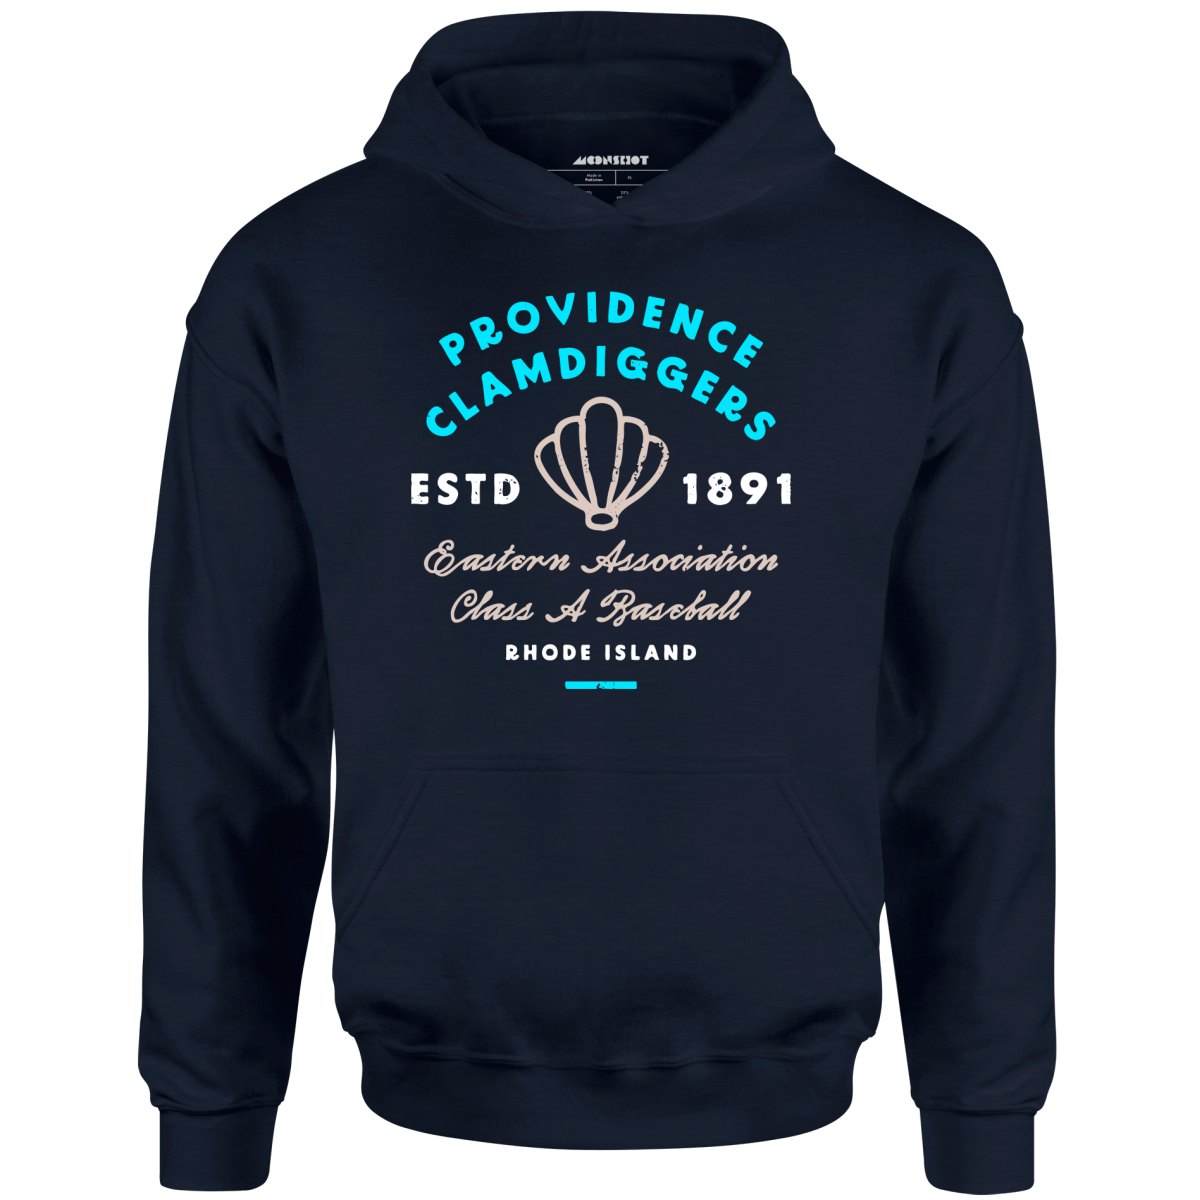 Providence Clamdiggers - Rhode Island - Vintage Defunct Baseball Teams - Unisex Hoodie